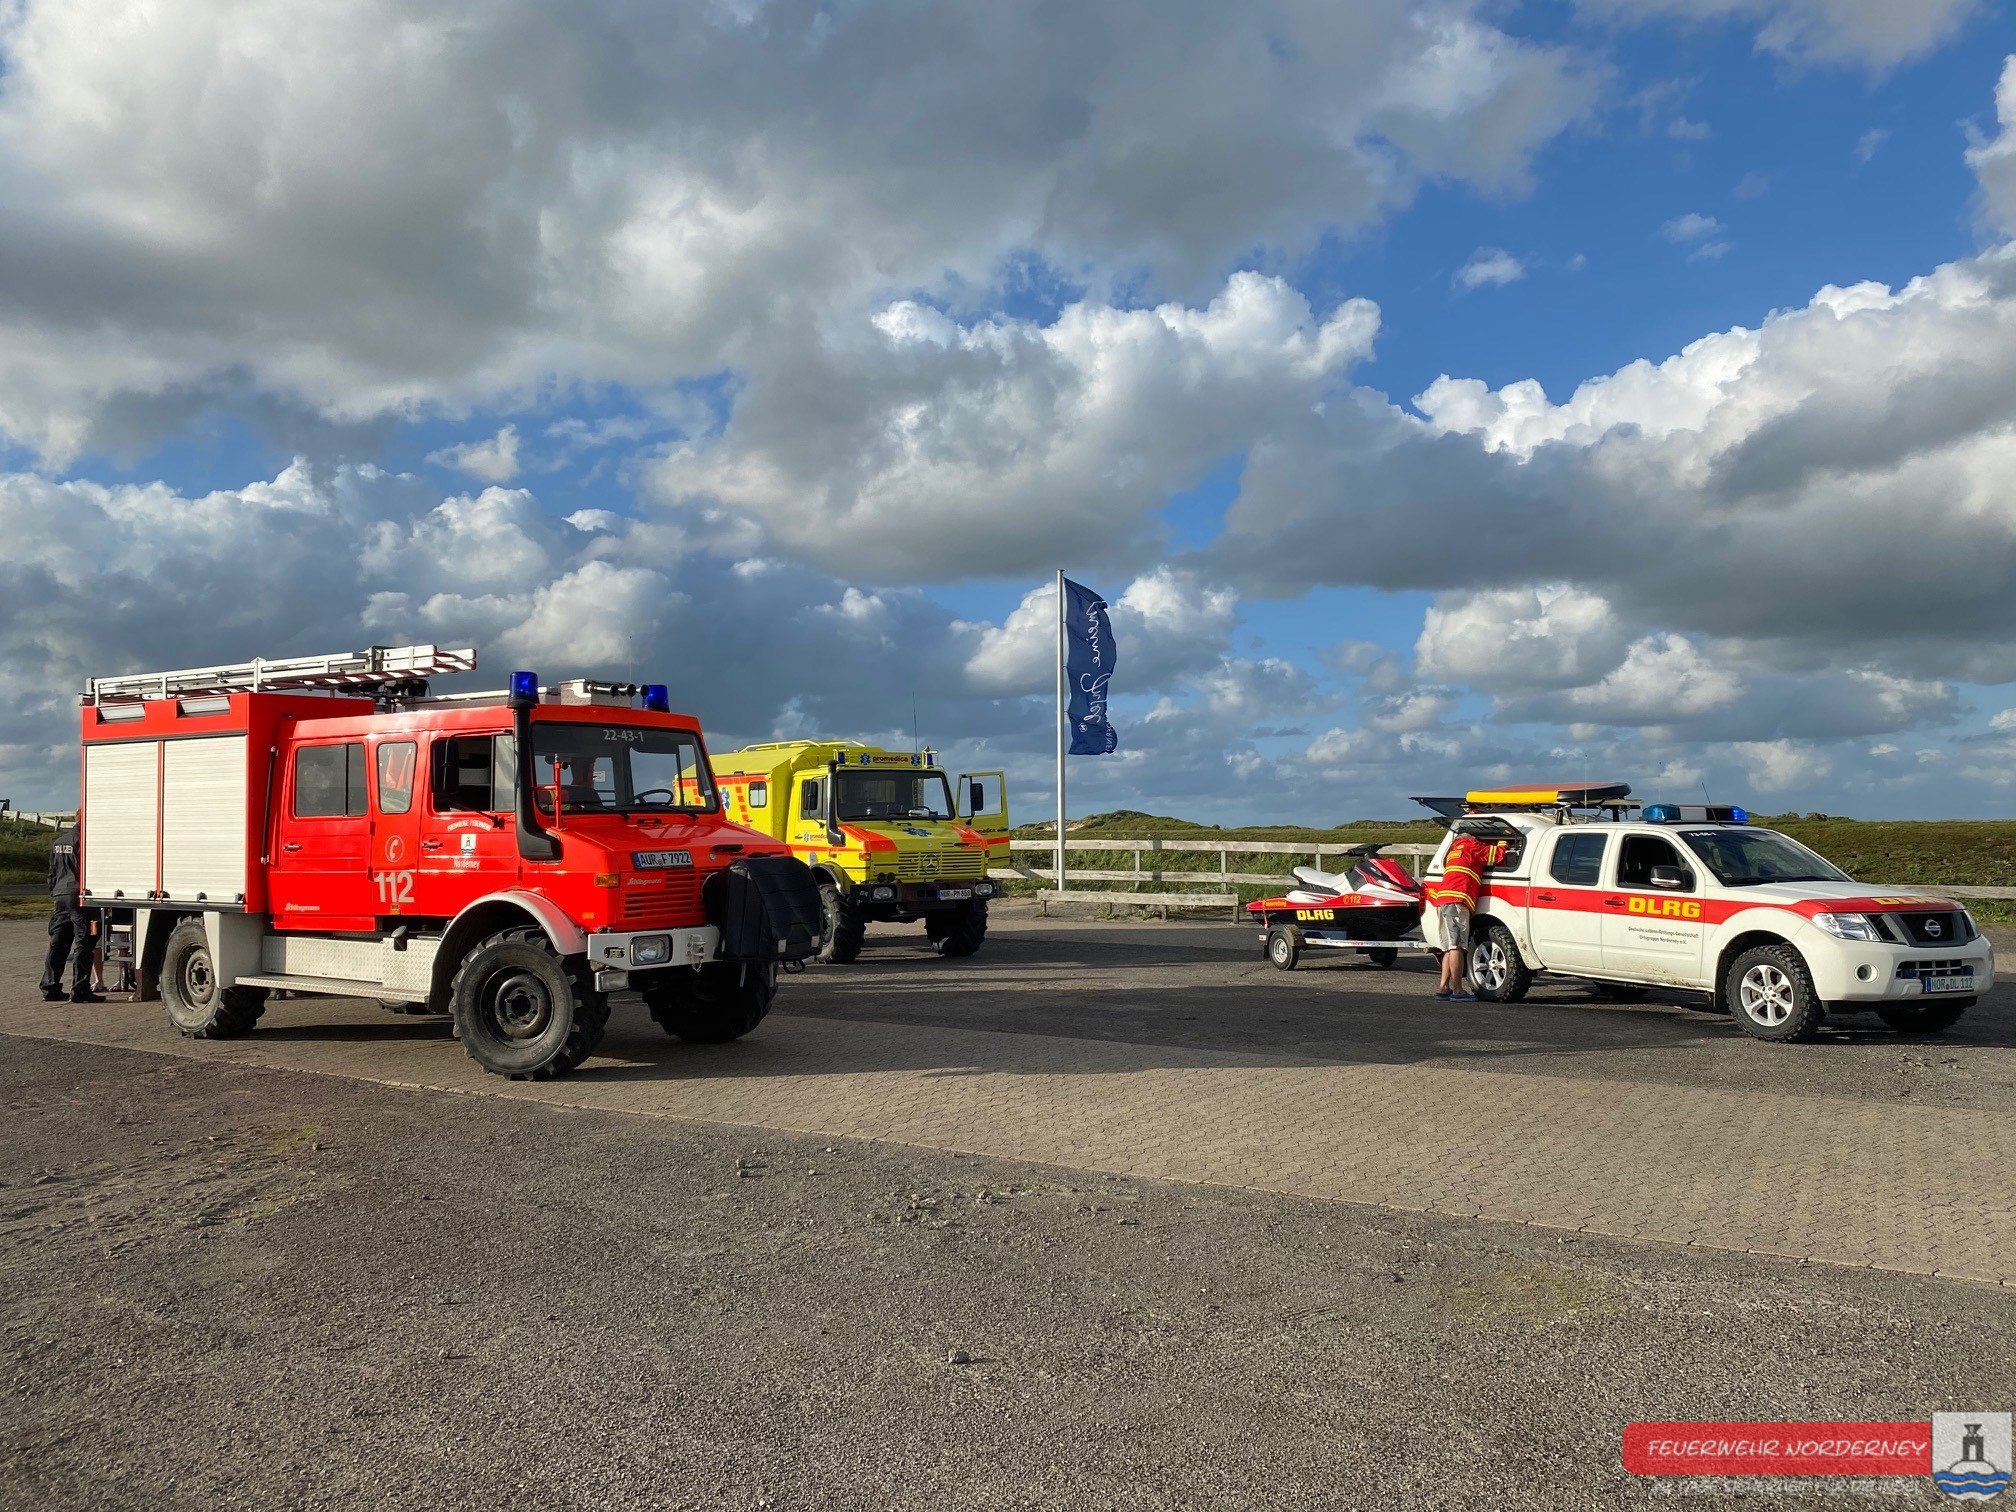 TH_Menschenrettung_aus_Wasser_Y – Freiwillige Feuerwehr Norderney